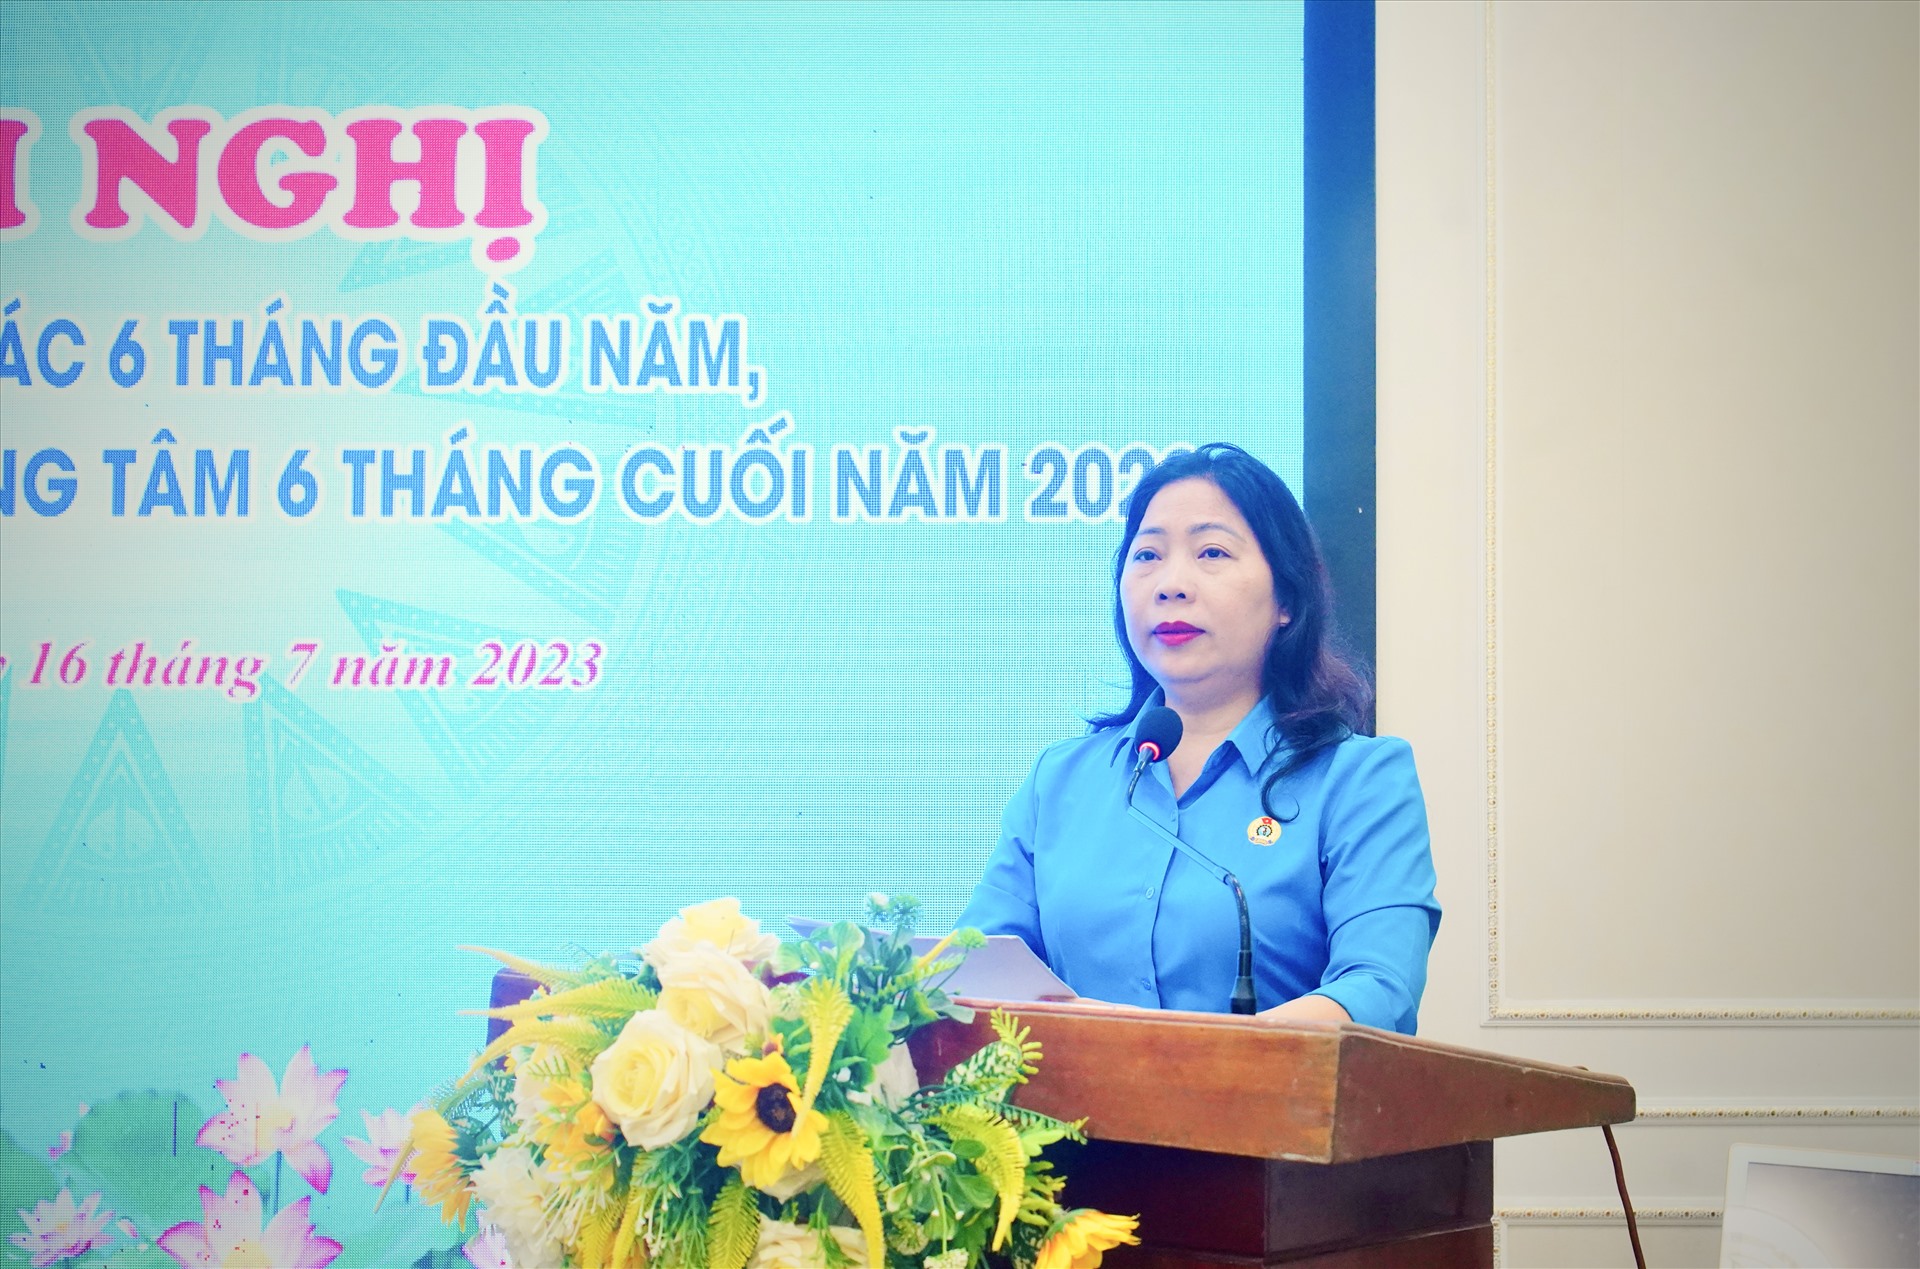 Bà Trần Thị Thu Hà – Chủ tịch Công đoàn ngành Y tế đã trình báo cáo sơ kết hoạt động Cụm công đoàn ngành 6 tháng đầu năm, triển khai nhiệm 6 tháng cuối năm 2023. Ảnh: Quỳnh Trang